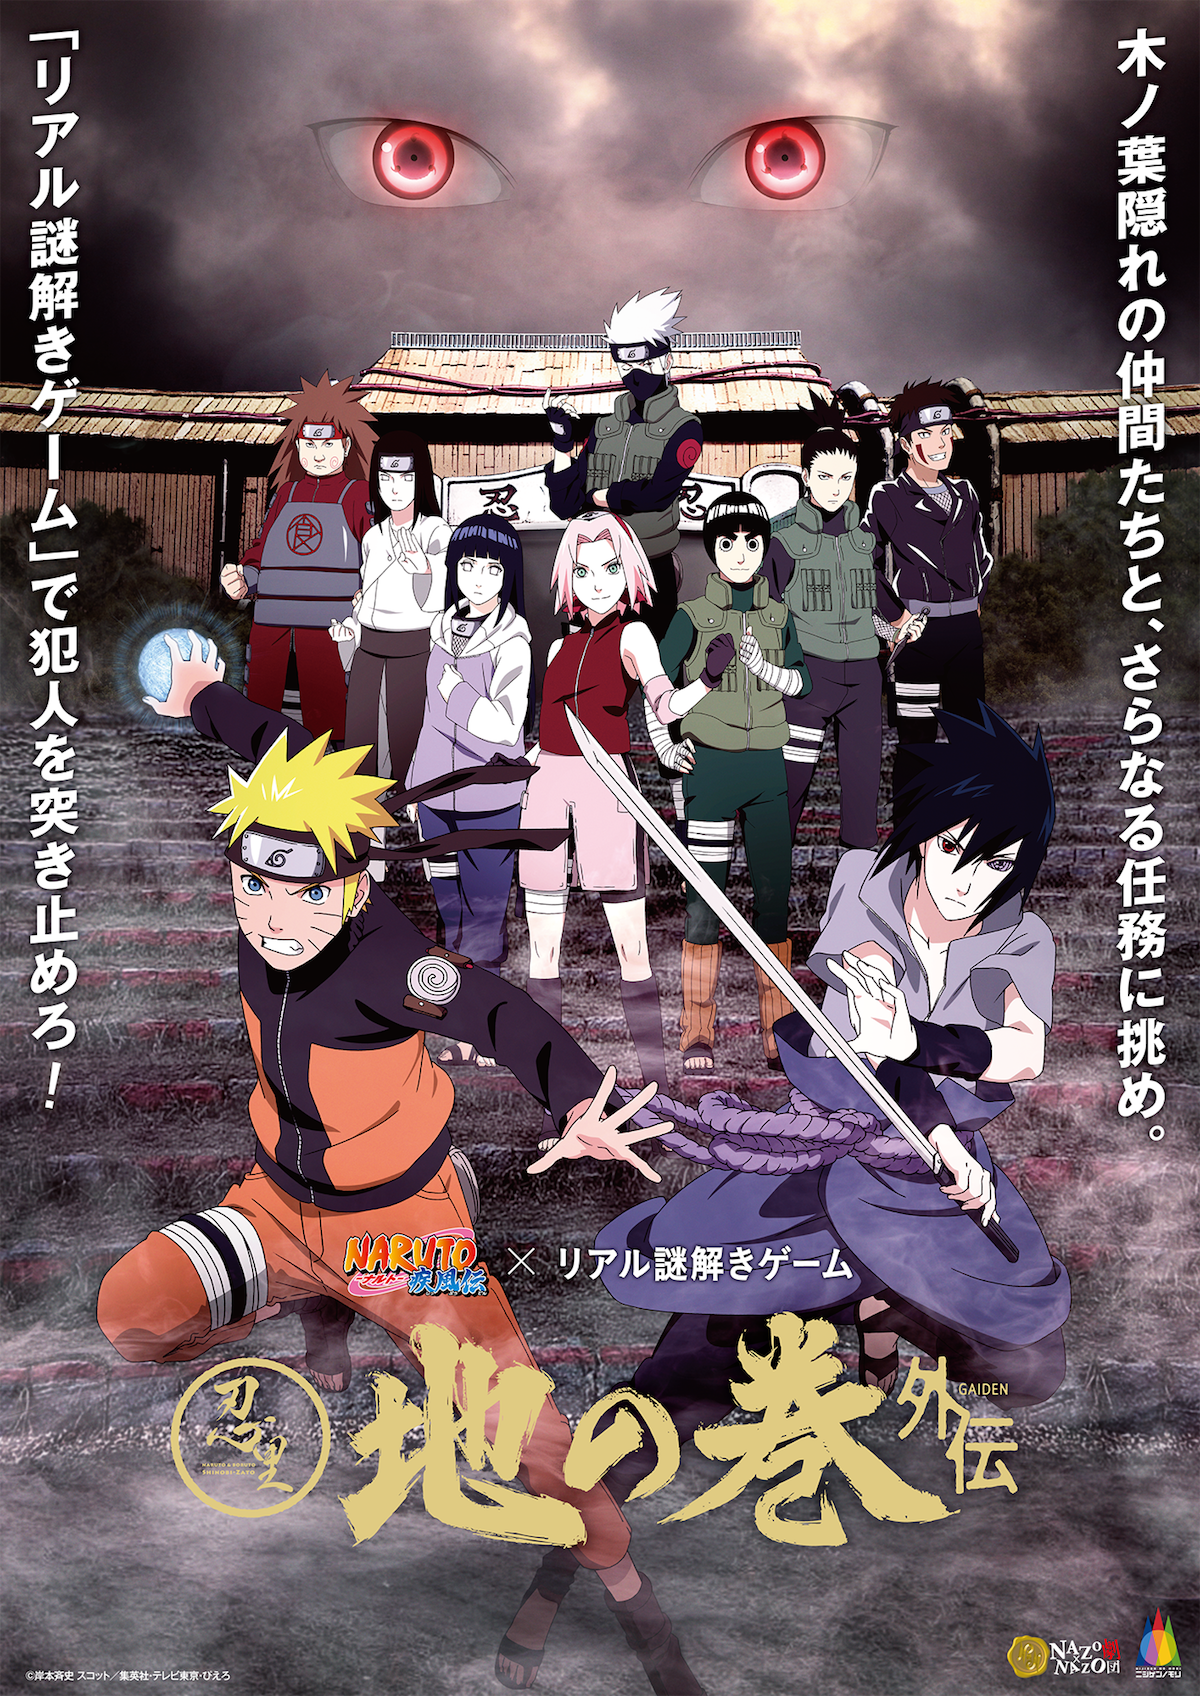 アニメ Naruto ナルト の世界観を再現したテーマエリアを周遊 リアル謎解きゲーム9月14日からニジゲンノモリにて開催 Narutoファン必見 登場人物になる没入型 イベント限定ストーリー 株式会社ハレガケのプレスリリース